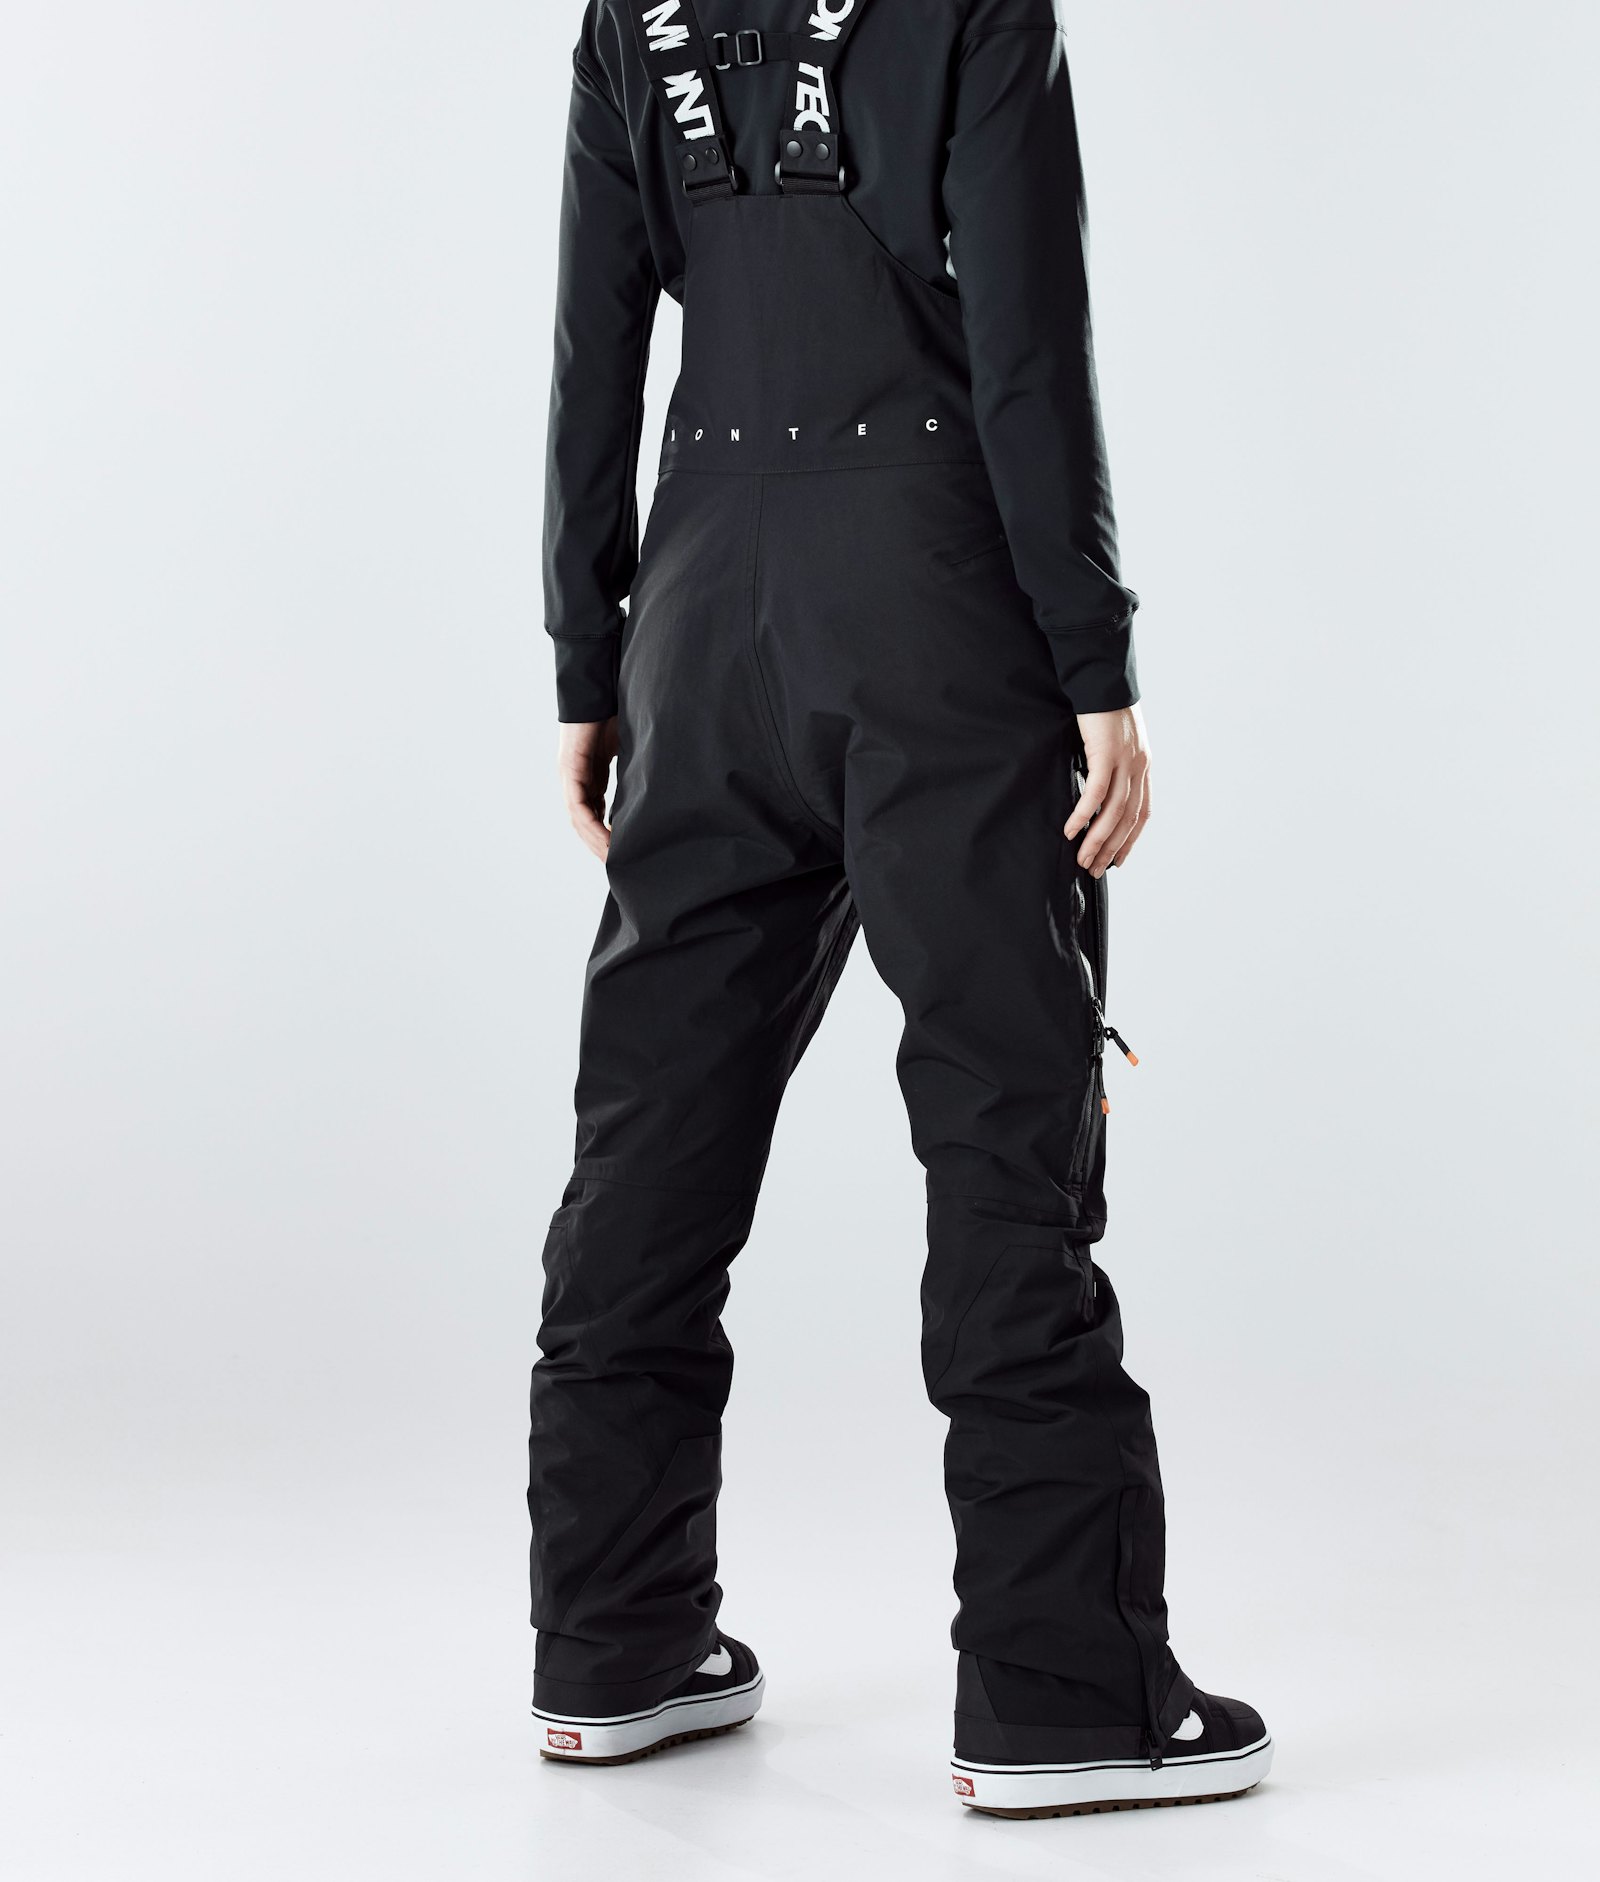 Fawk W 2020 Pantalon de Snowboard Femme Black Renewed